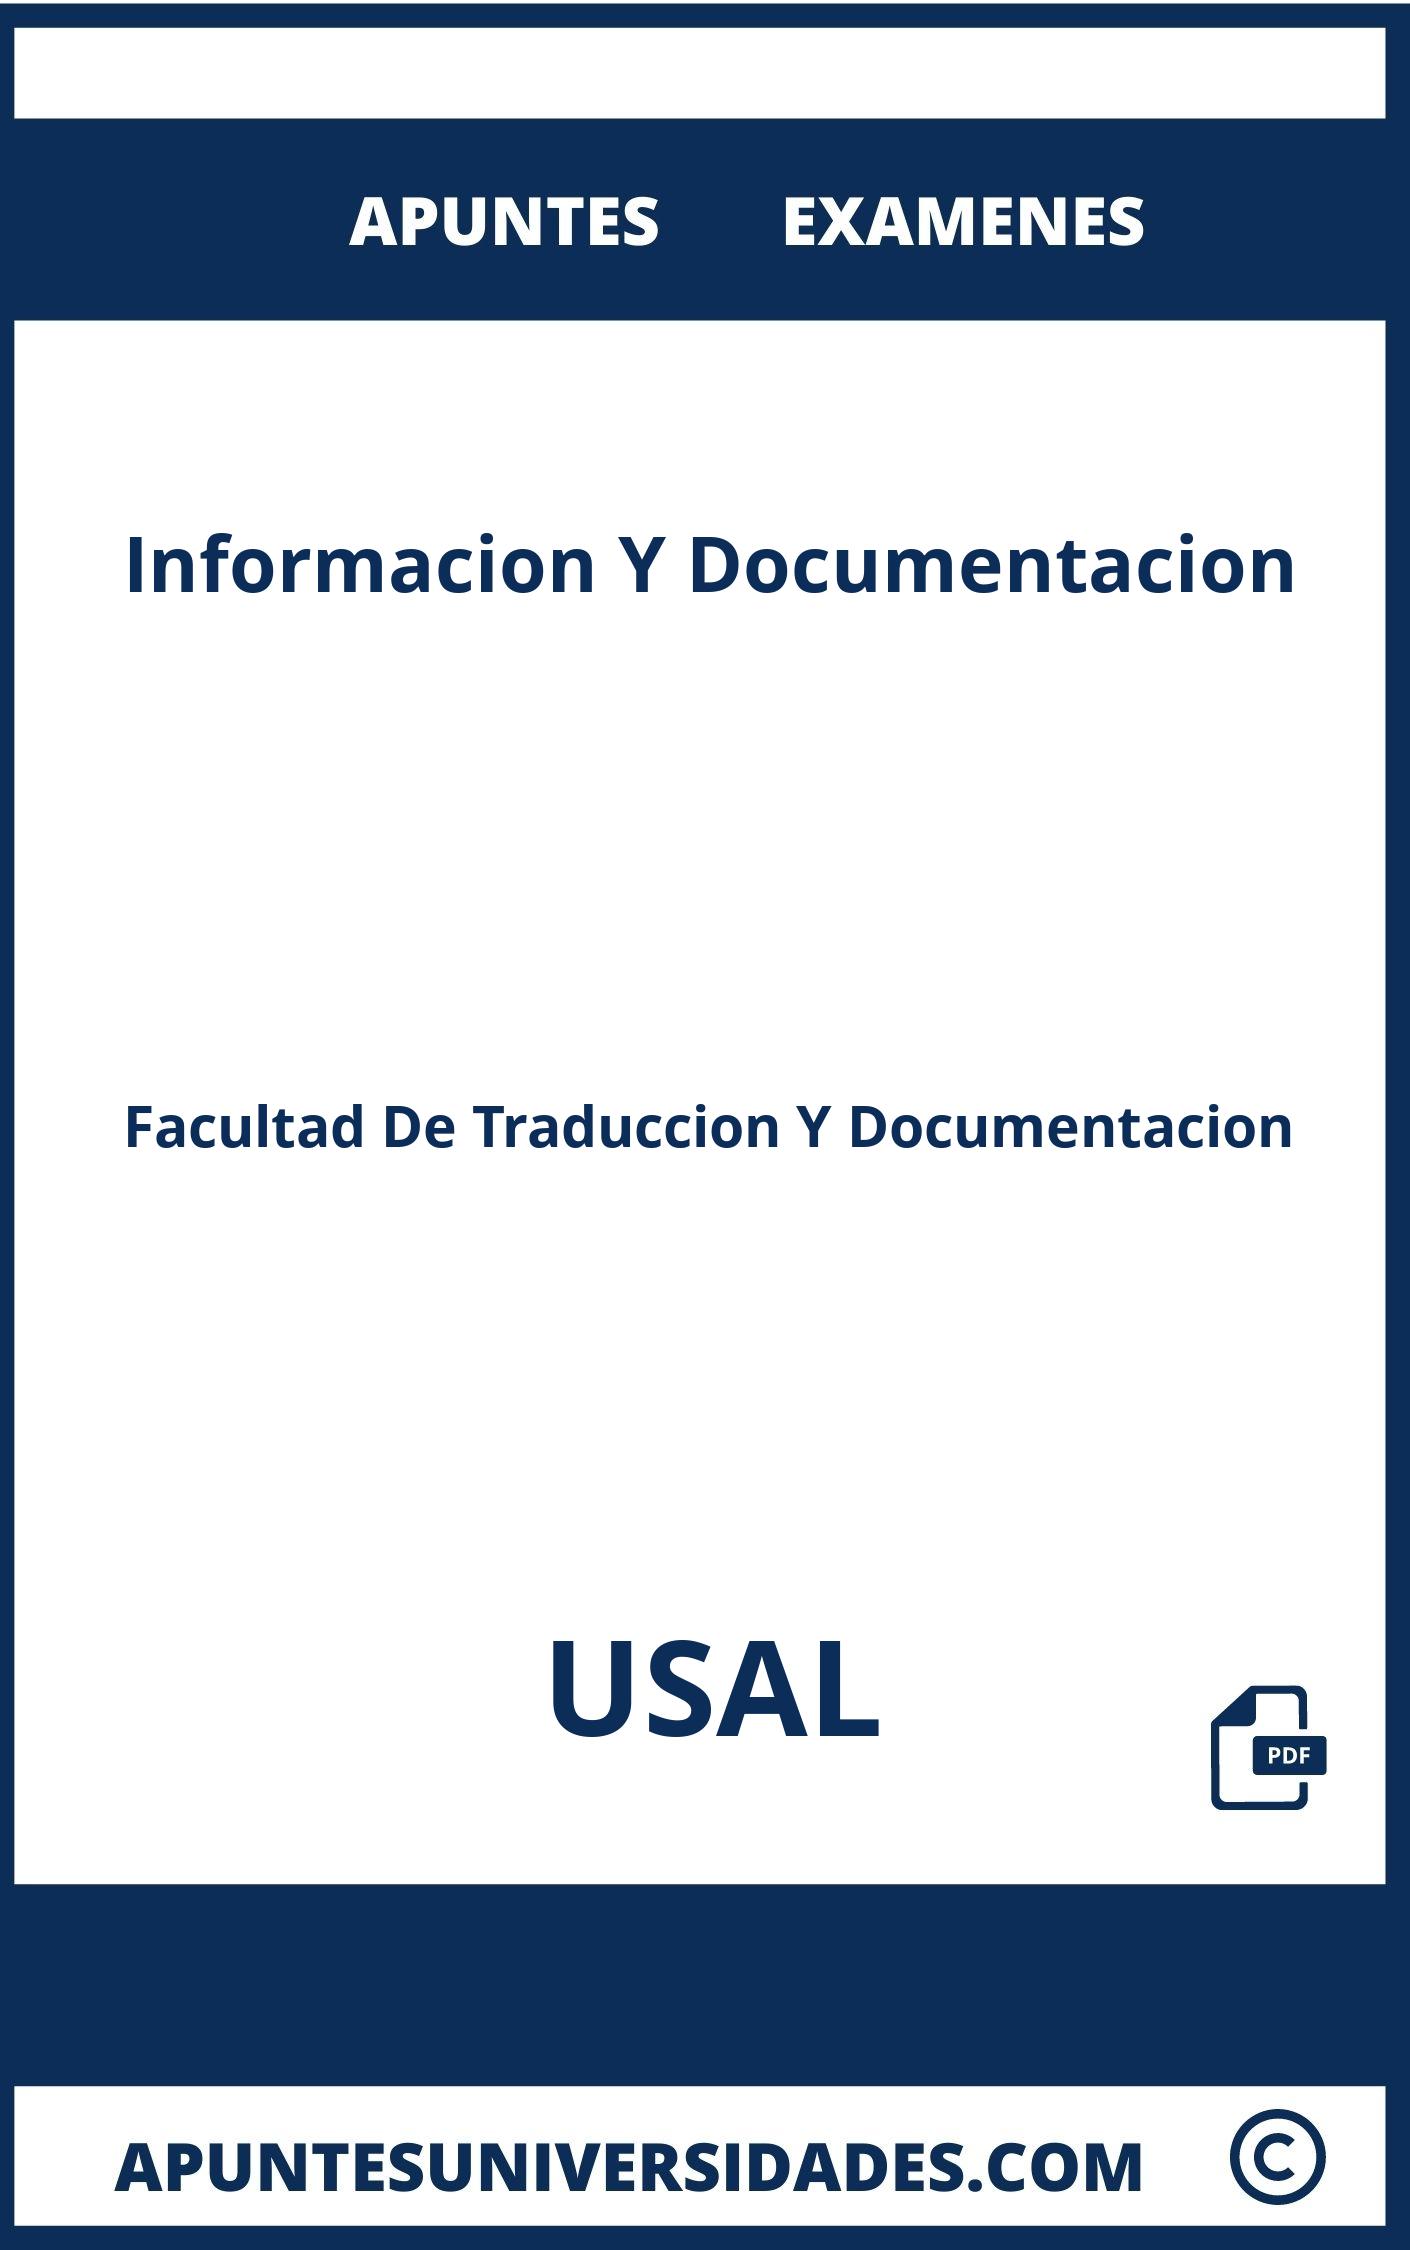 Apuntes y Examenes de Informacion Y Documentacion USAL